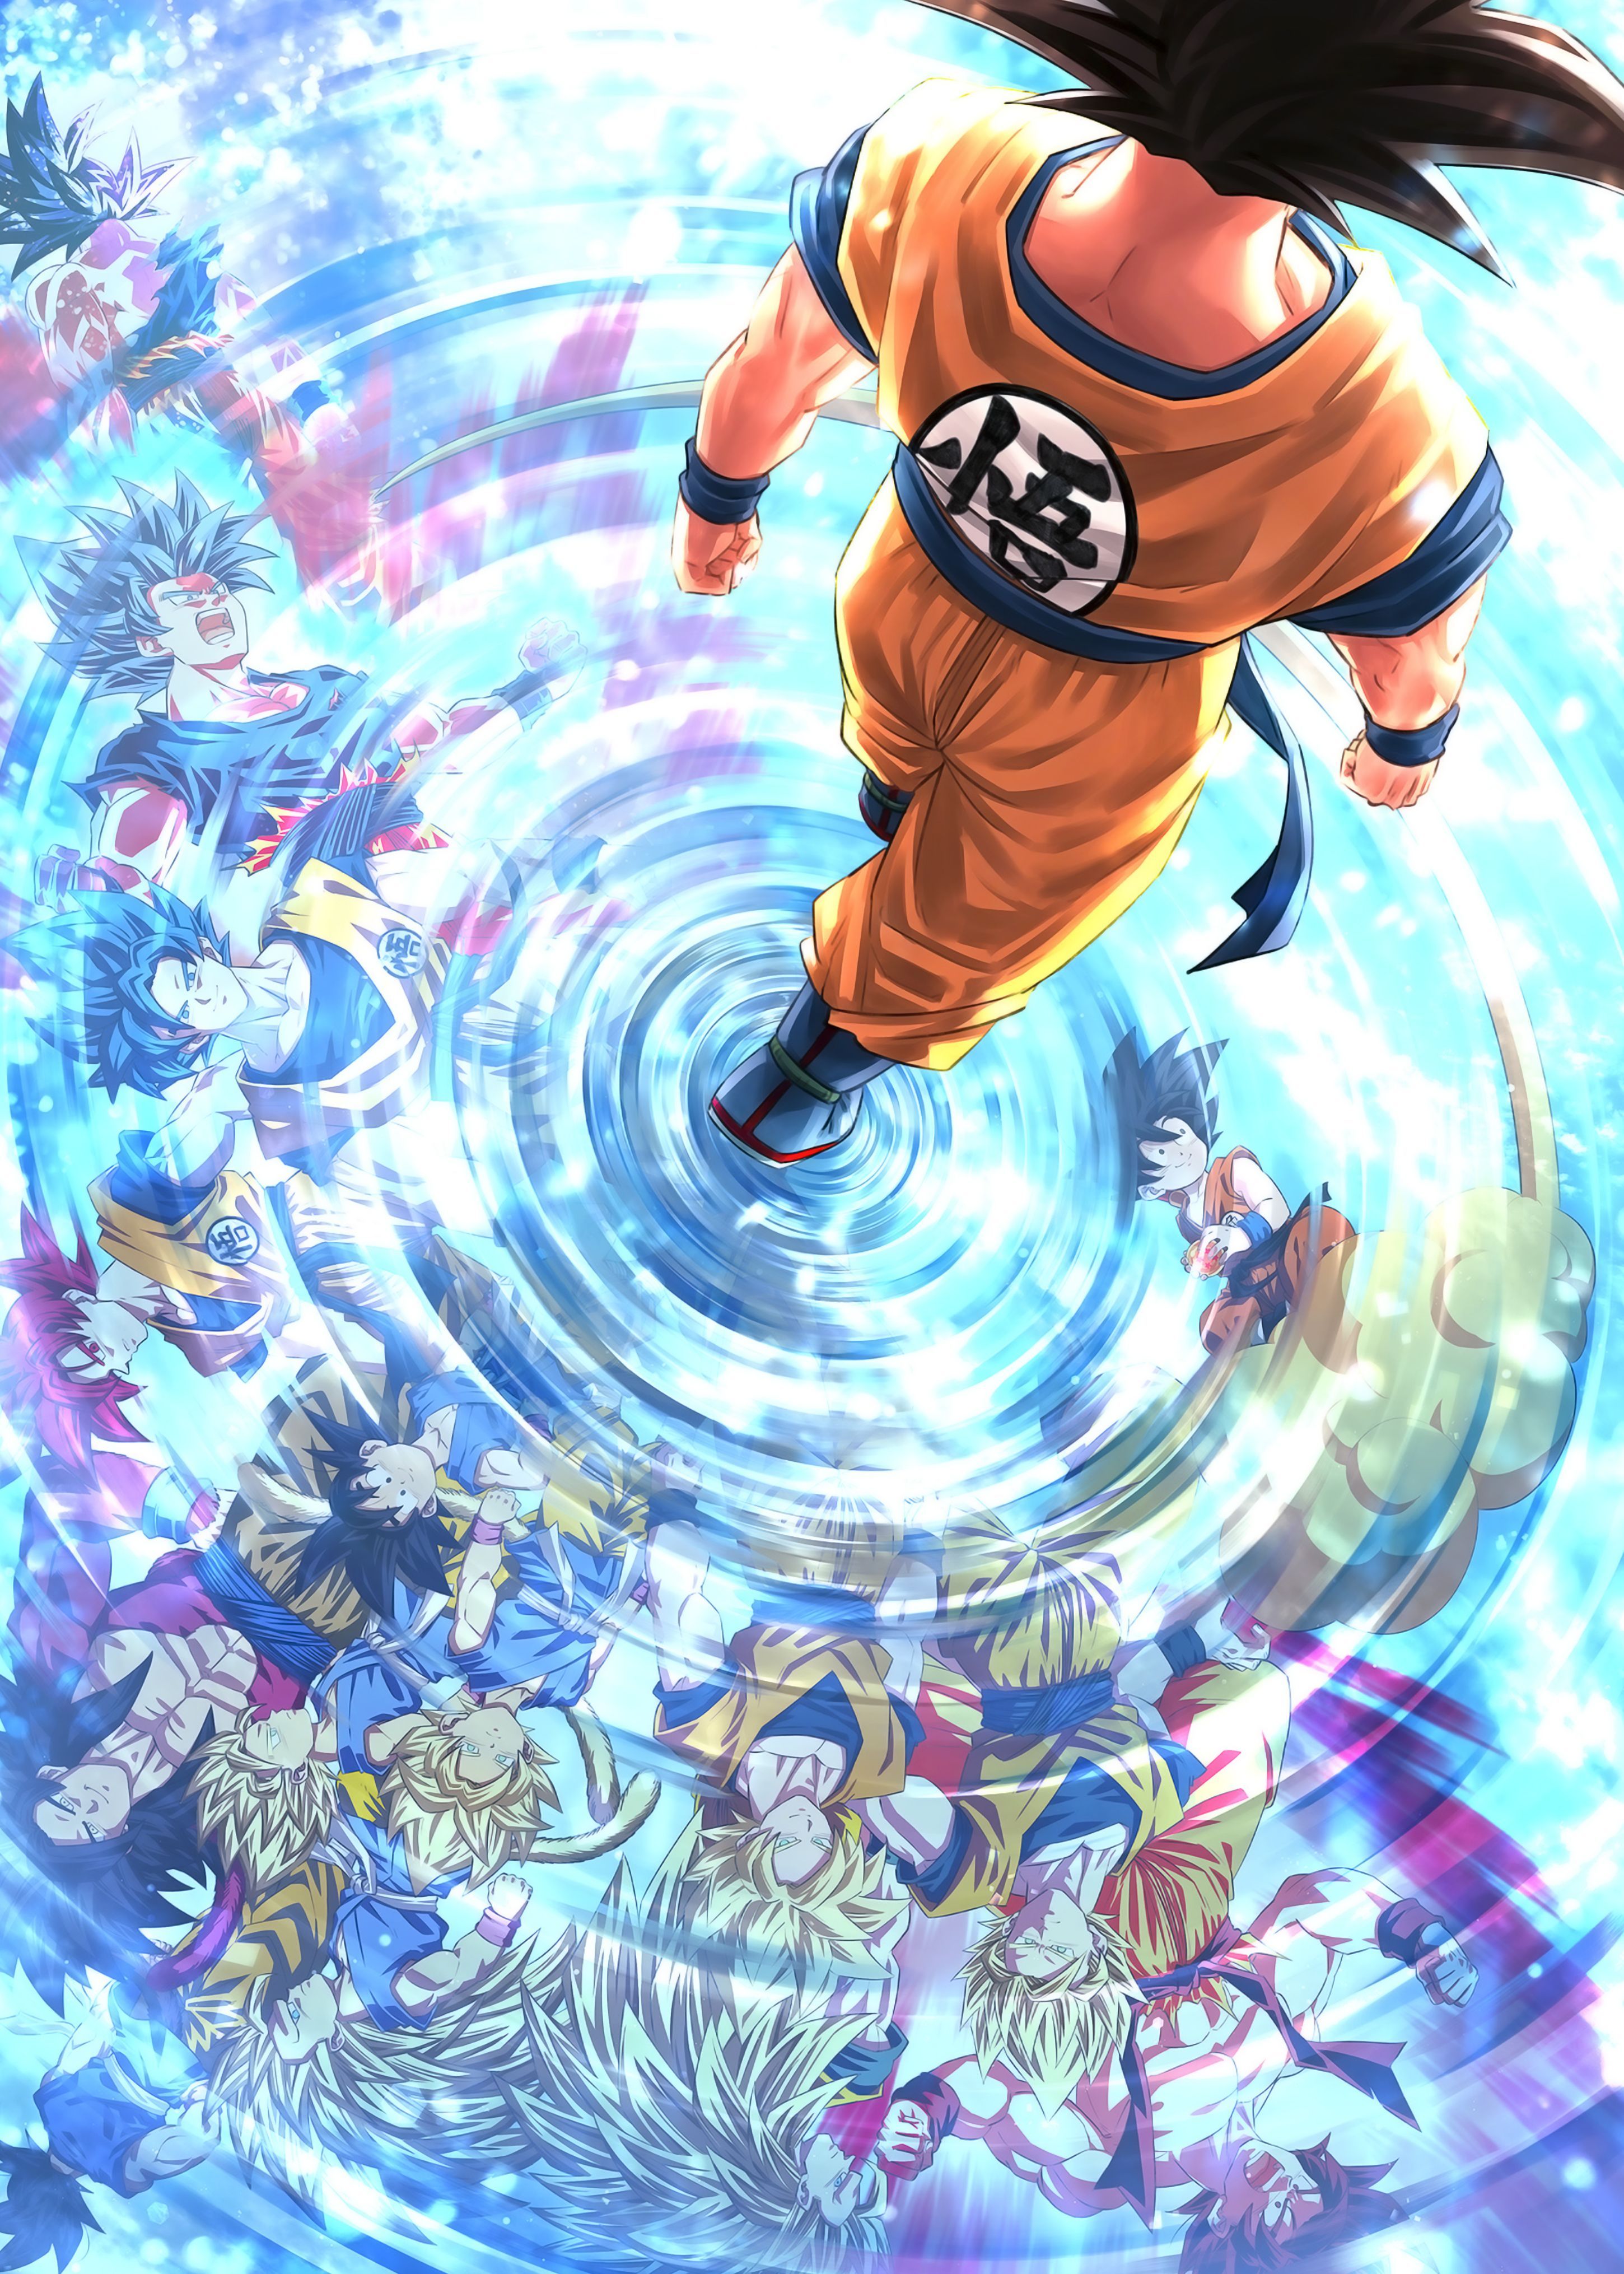 Goku Evolution Poster by terpres. Dragon ball super manga, Dragon ball art goku, Dragon ball painting